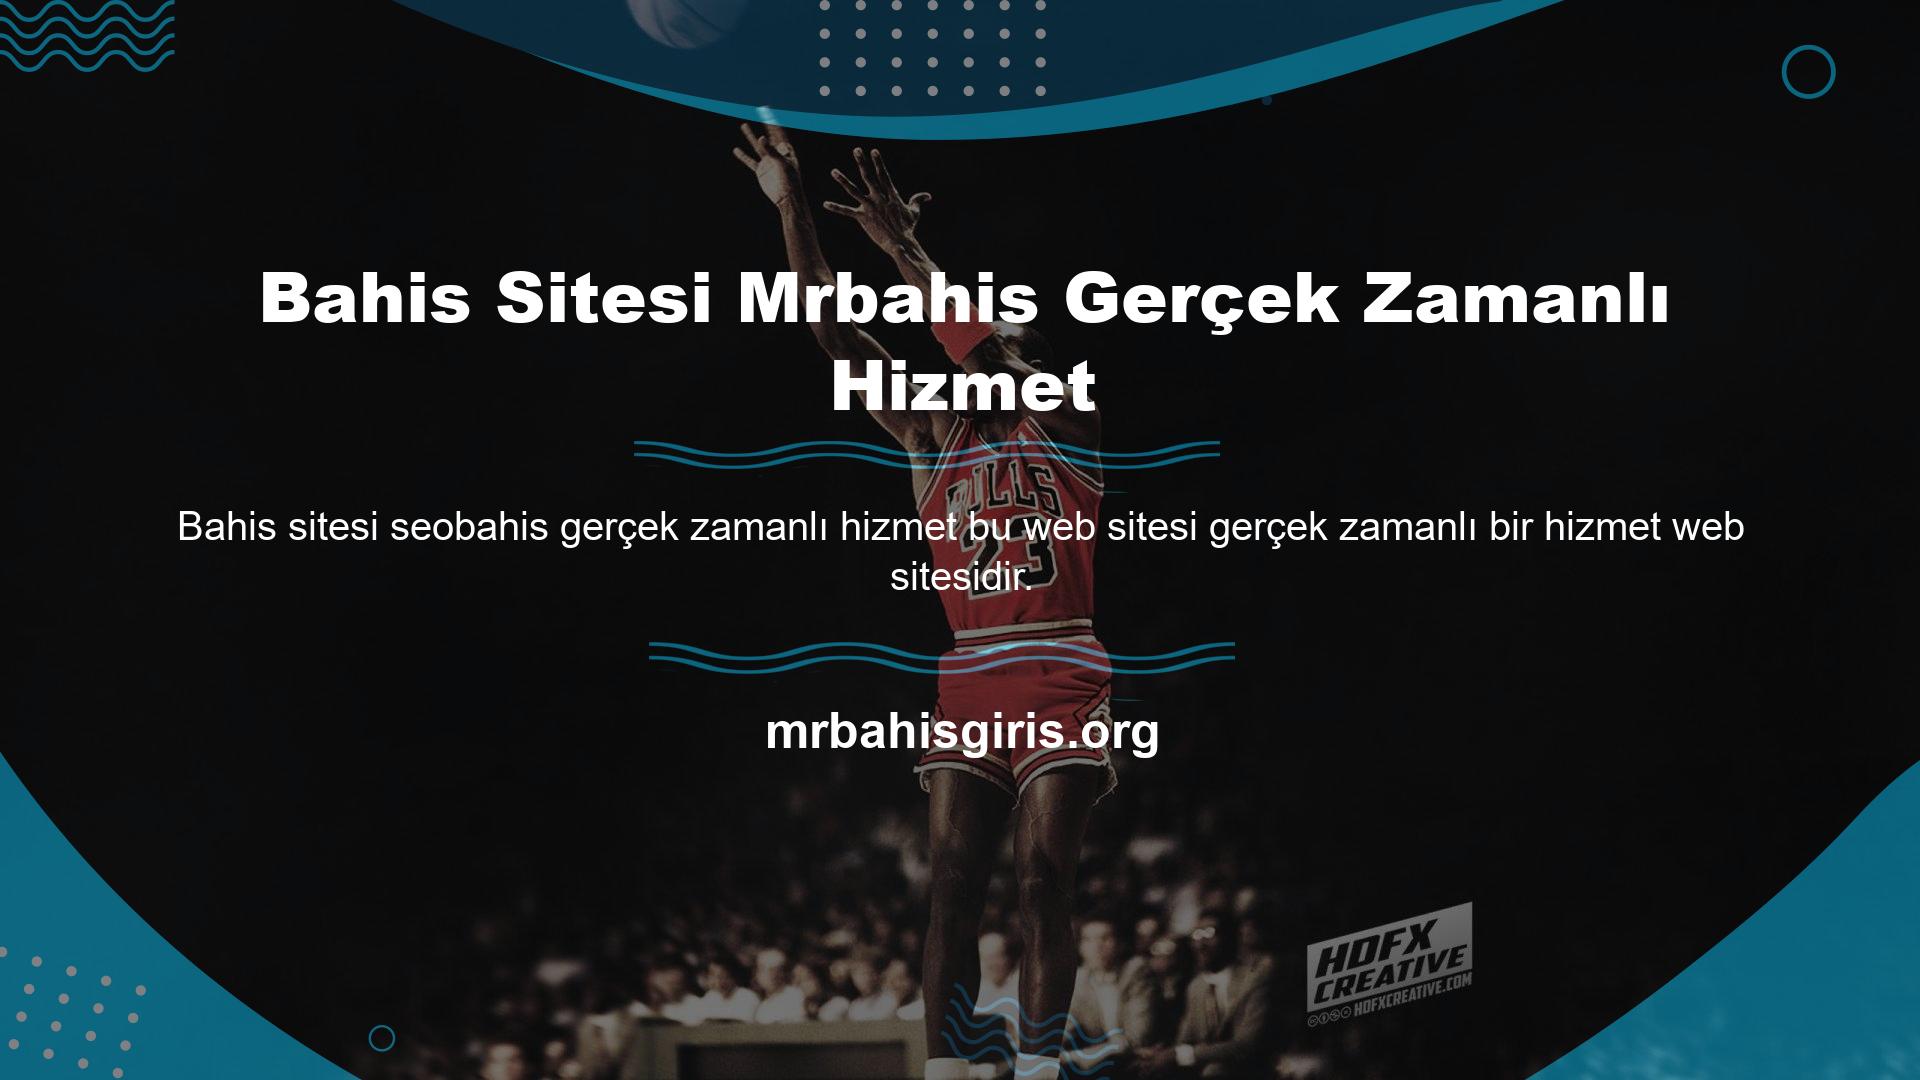 Mrbahis Live Express, site dışı çevrimiçi oyun ve bahis hizmetlerini içerir